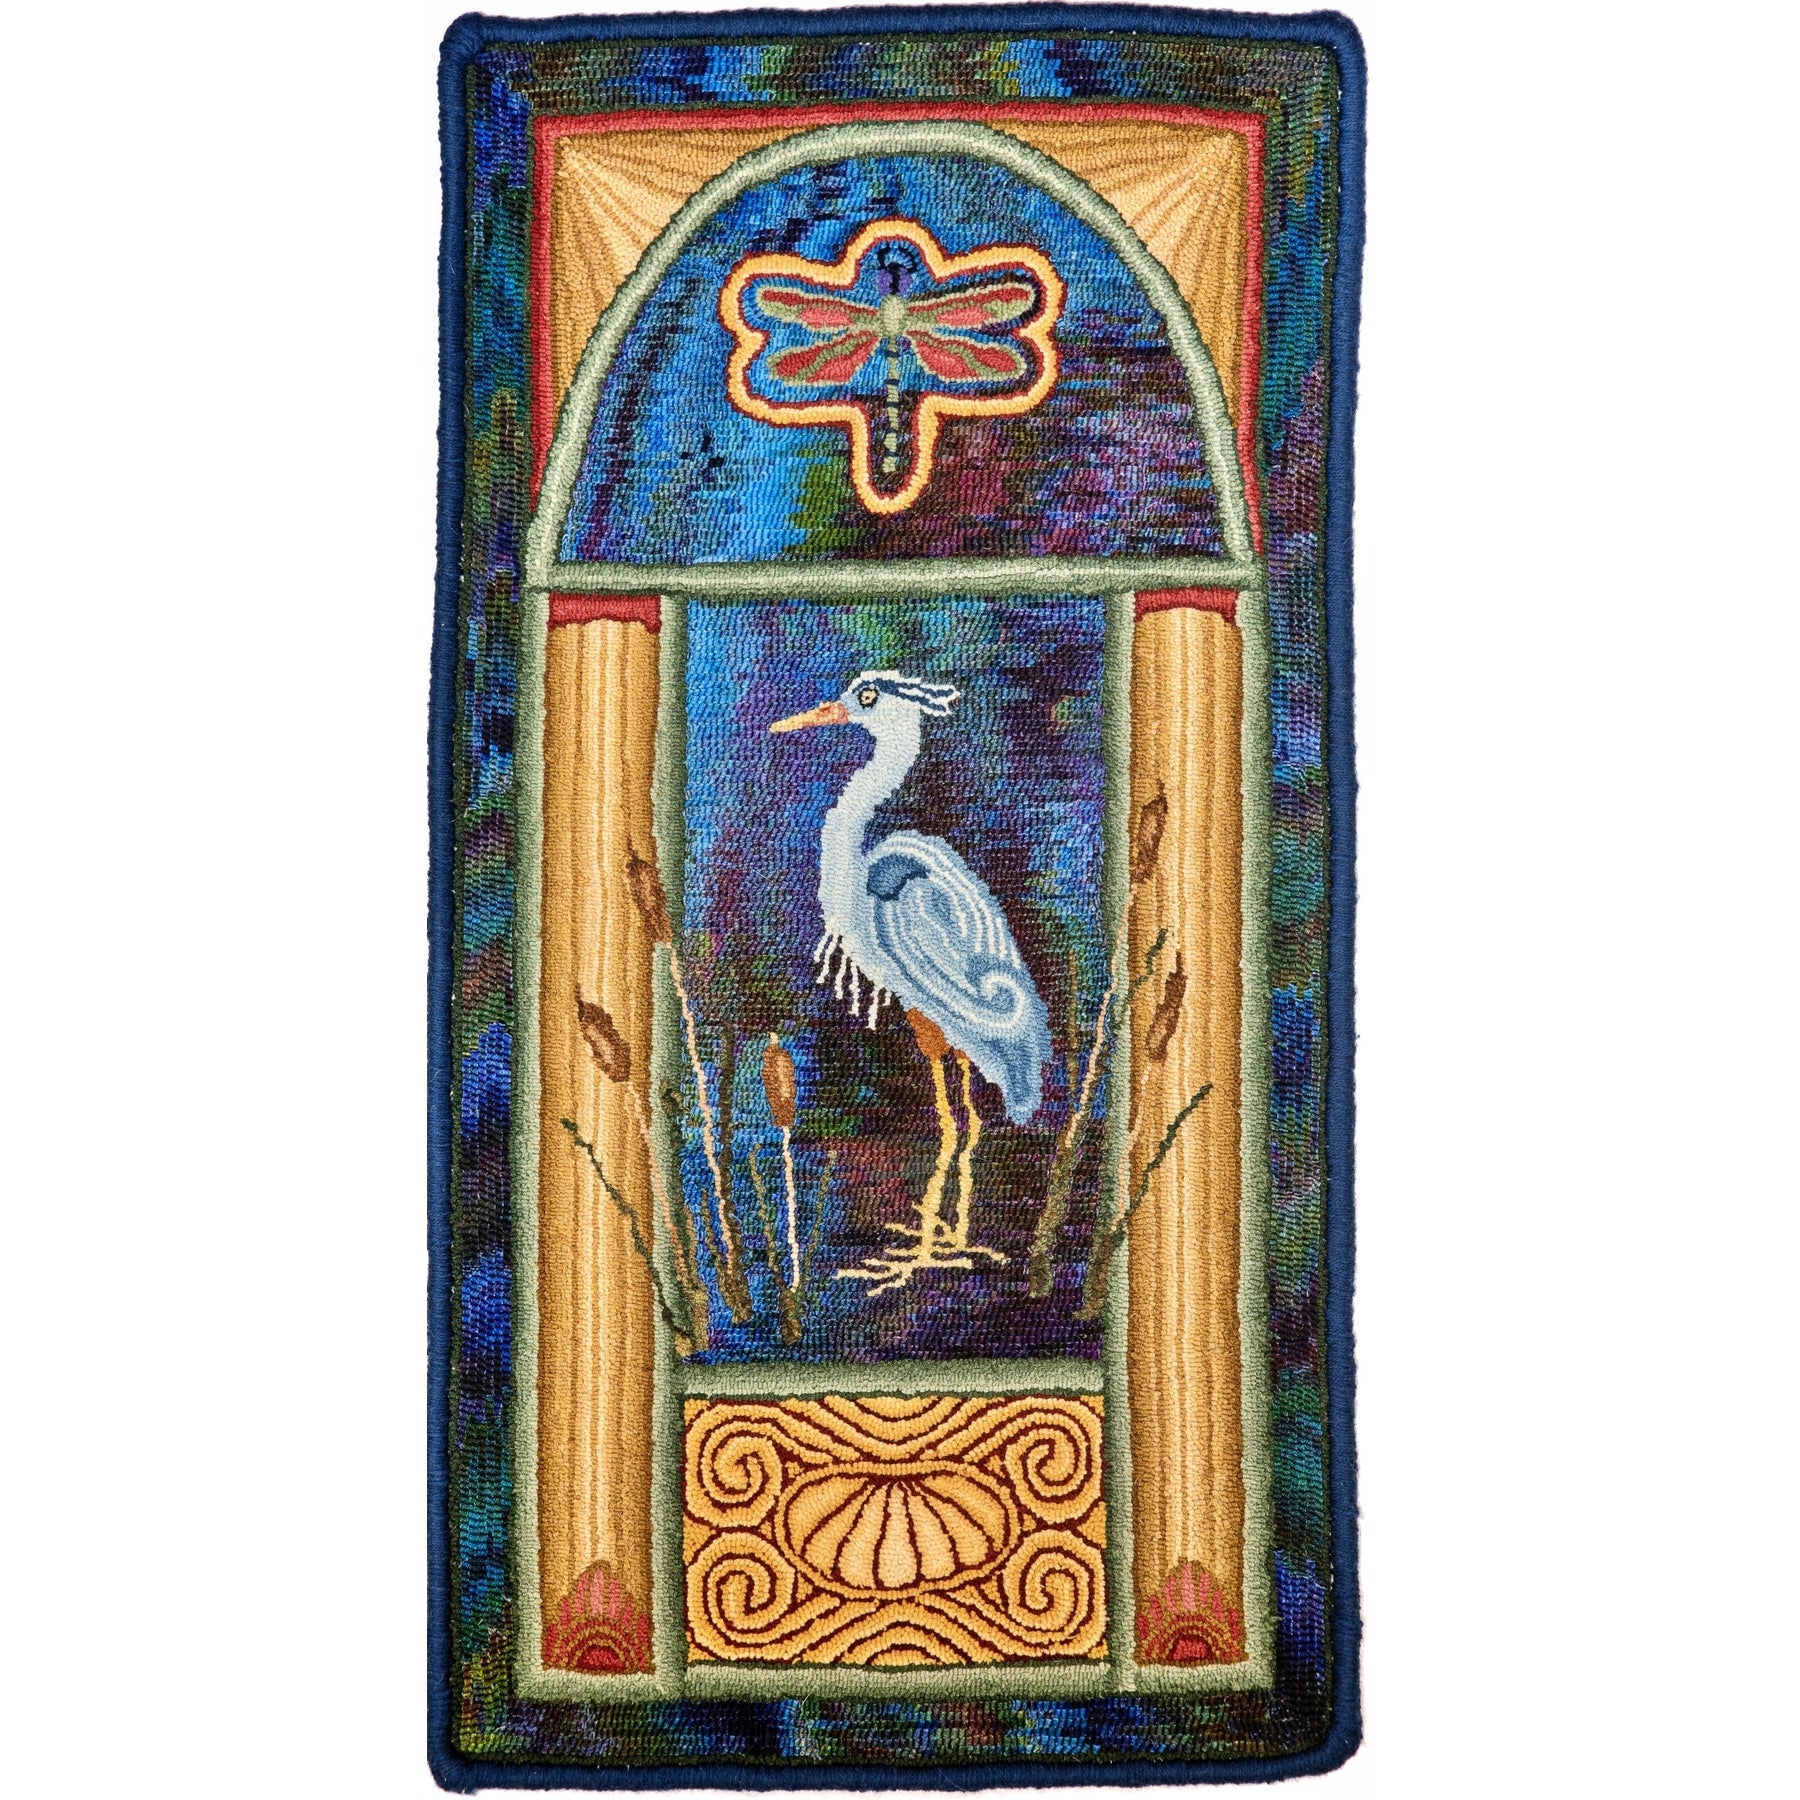 Art Nouveau Heron, rug hooked by John Leonard